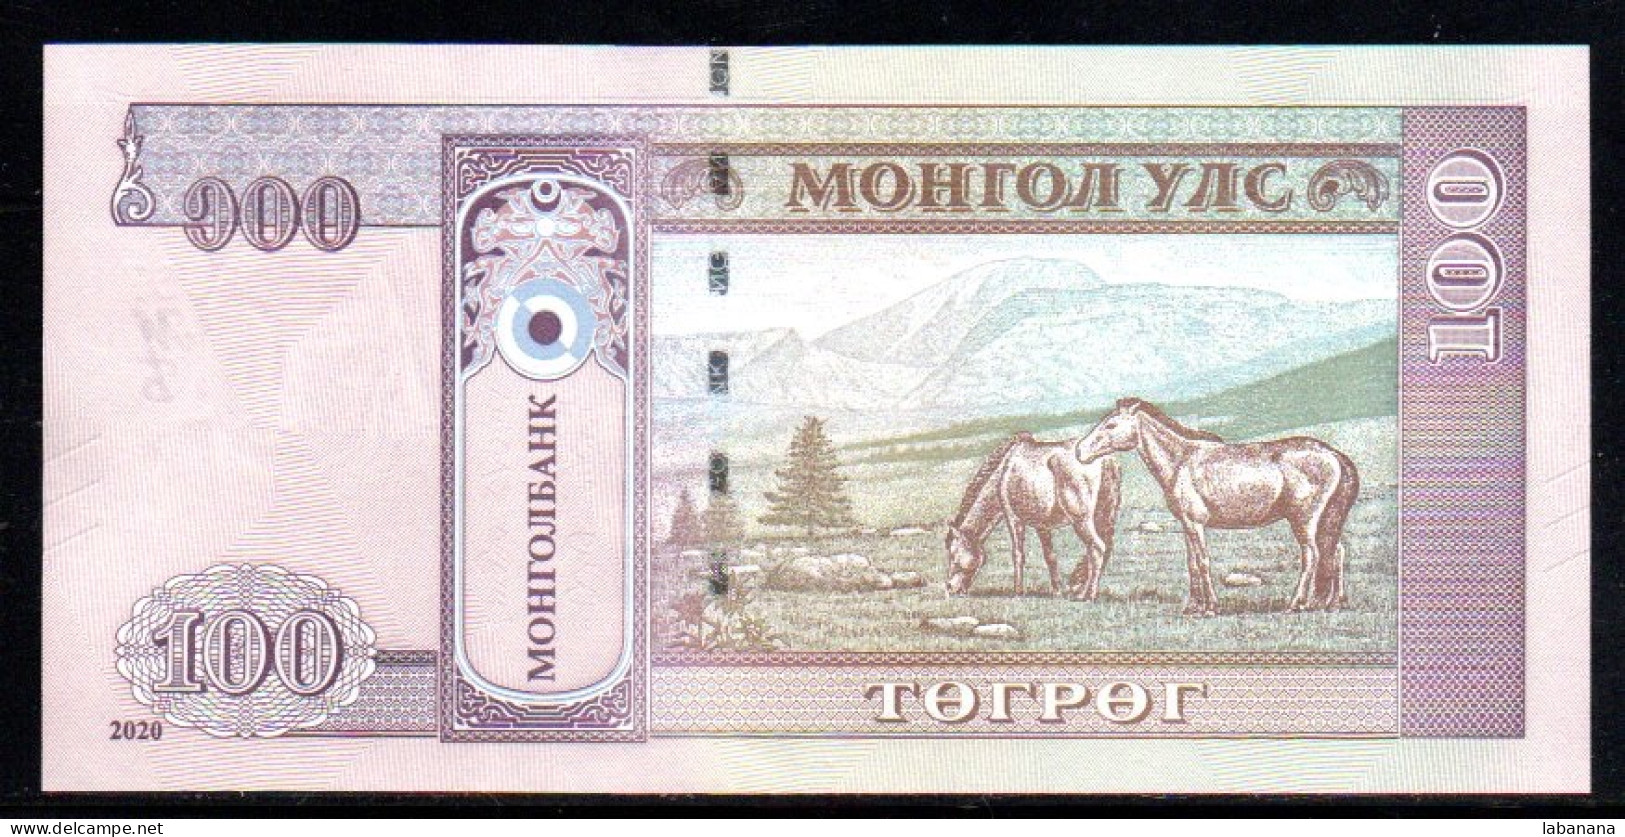 688-Mongolie 100 Tugrik 2020 AT110 Neuf/unc - Mongolei